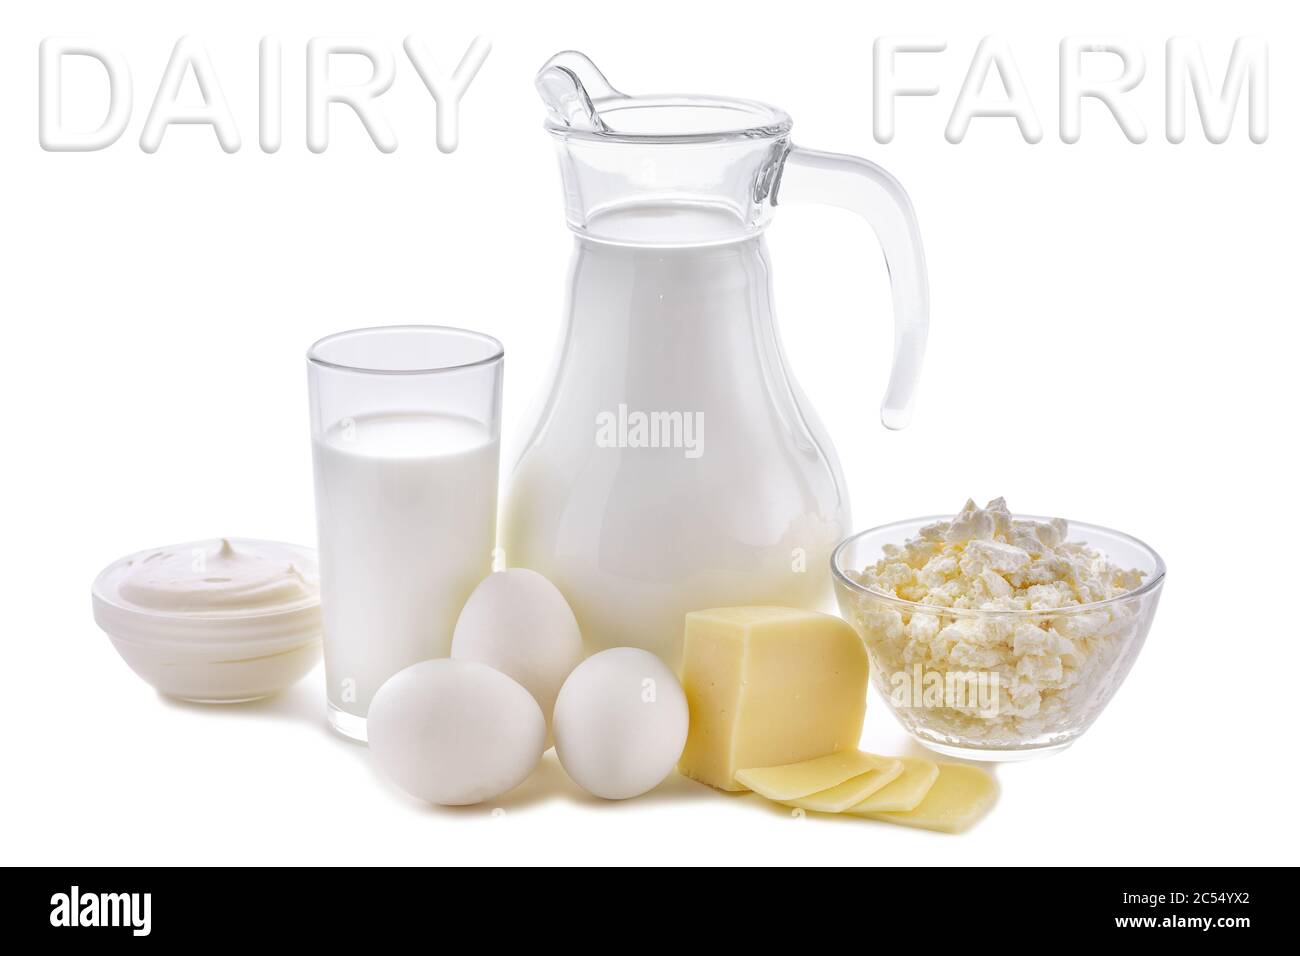 Productos lácteos sobre fondo blanco. Leche, queso cottage, crema agria, queso, mantequilla, huevos, vida de productos lácteos saludables. La nutrición de la lechería es Foto de stock